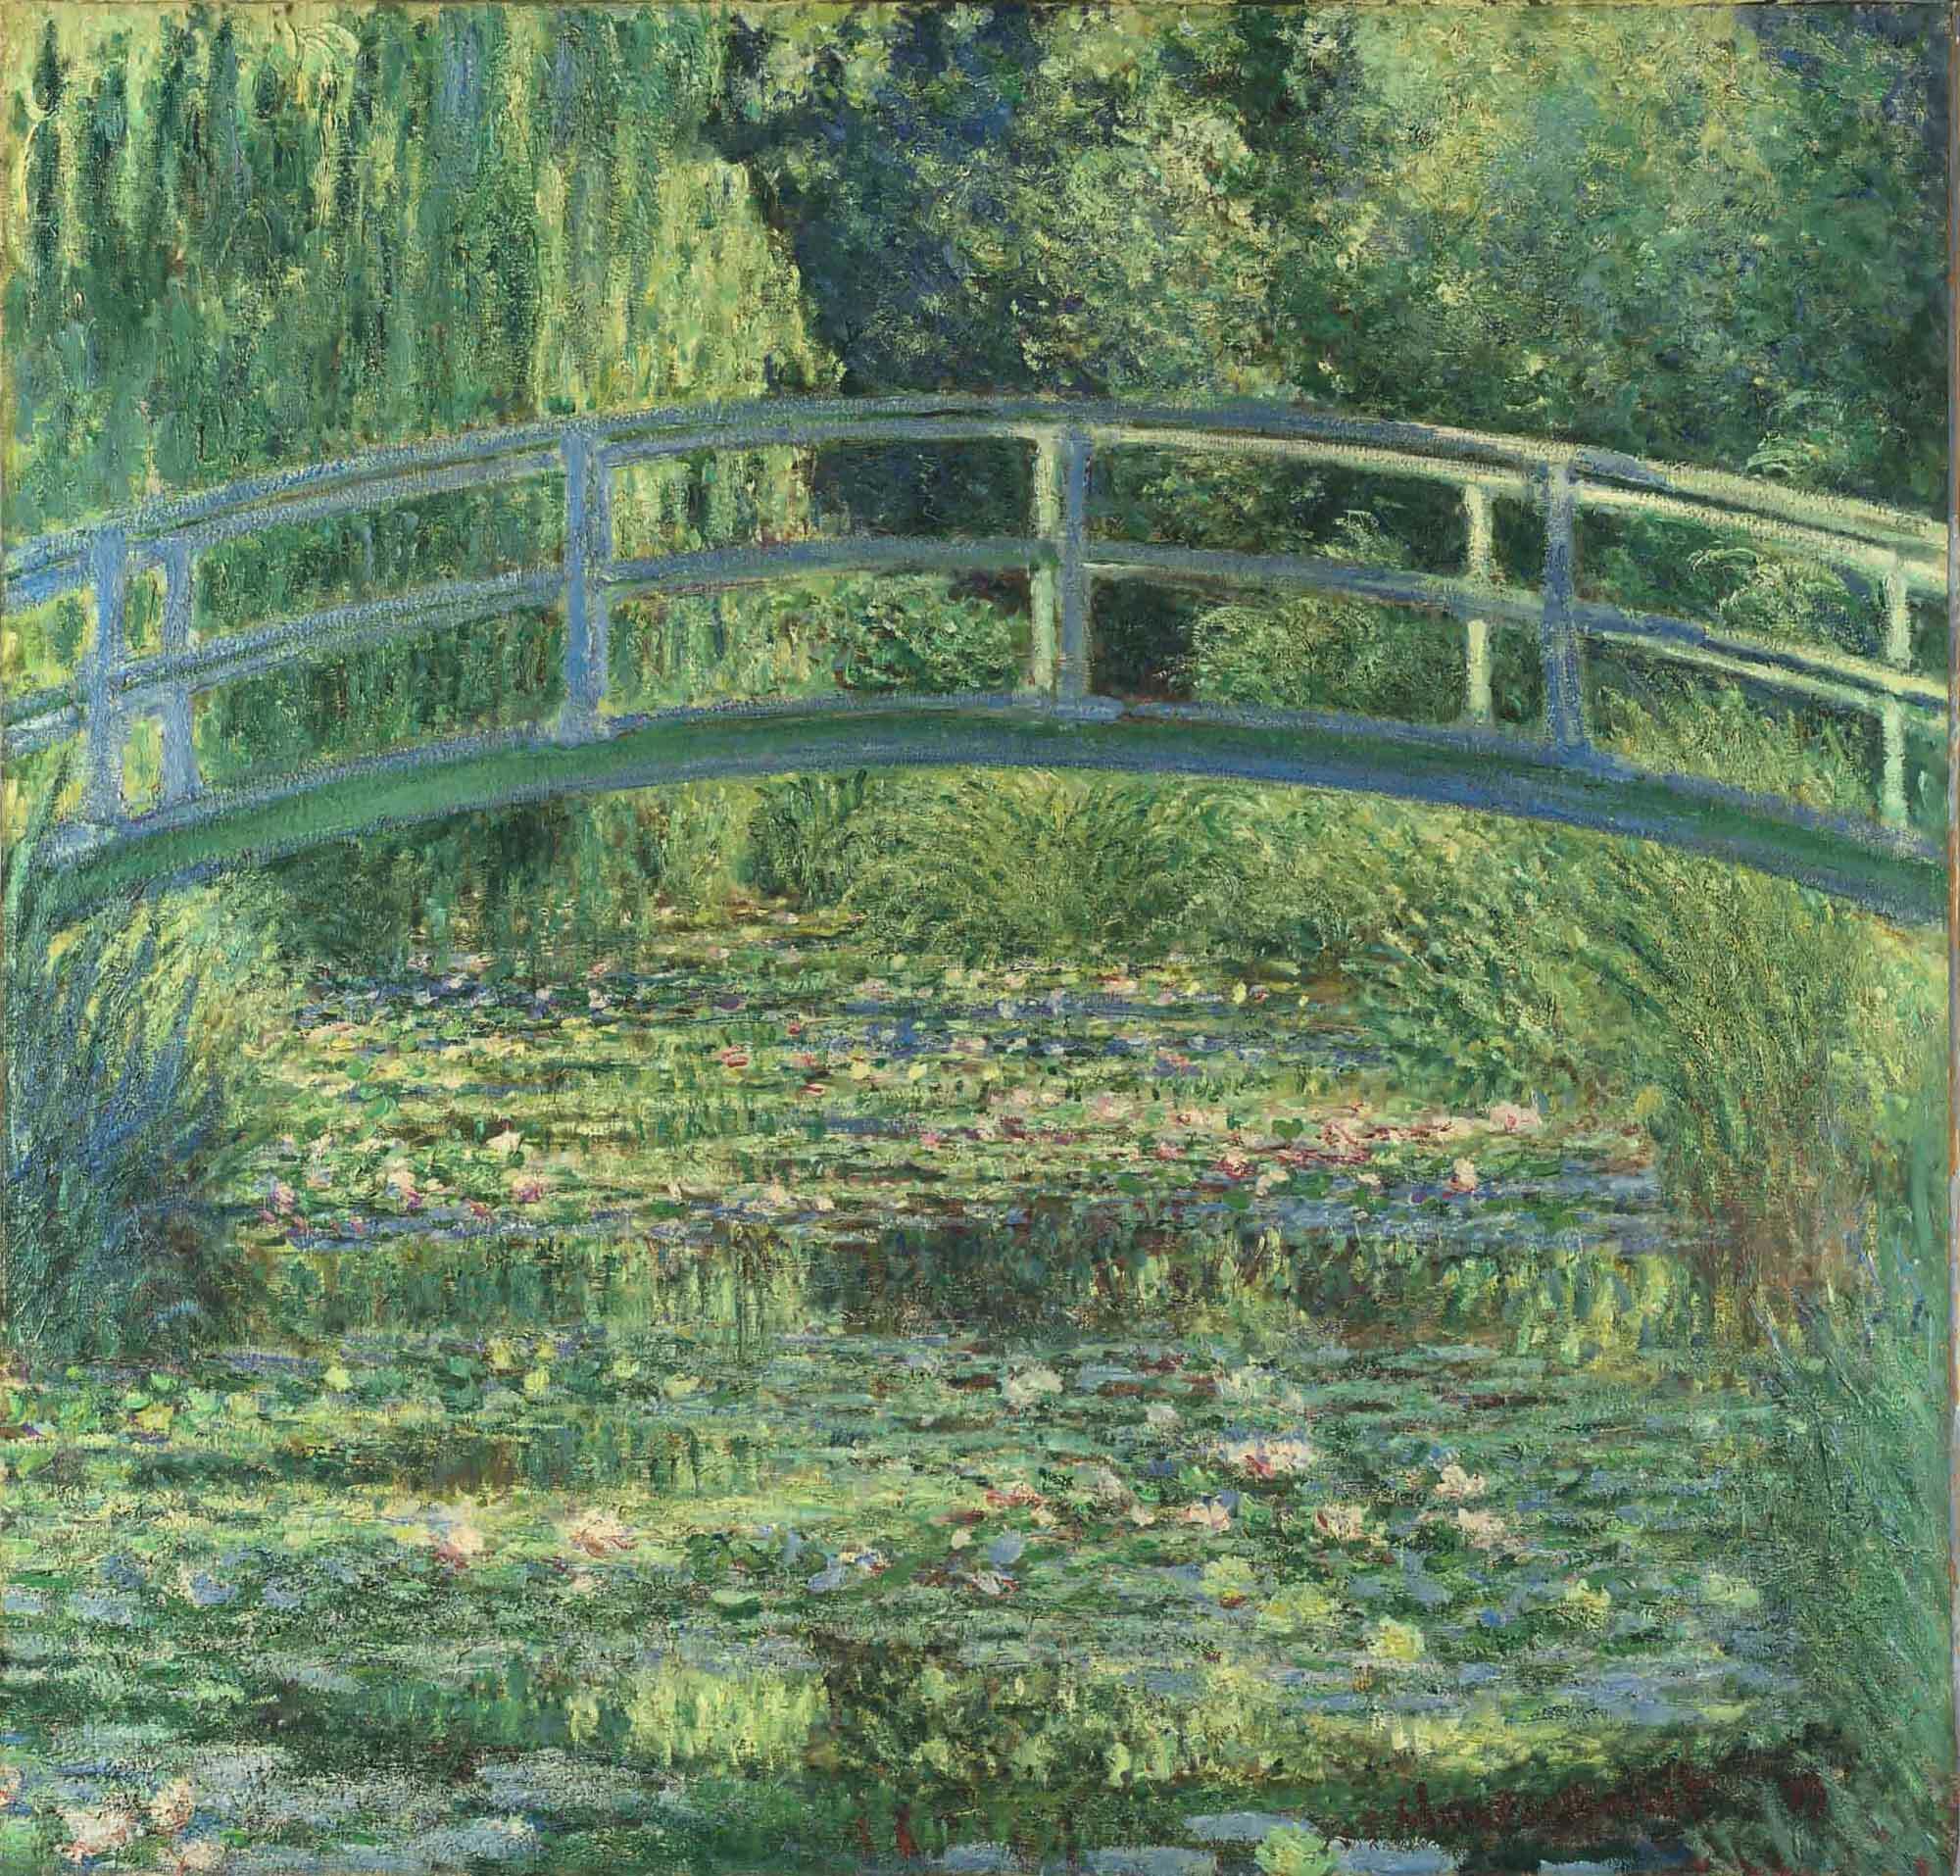 クロード・モネ《睡蓮の池》1899年、ナショナル・ギャラリー、ロンドン